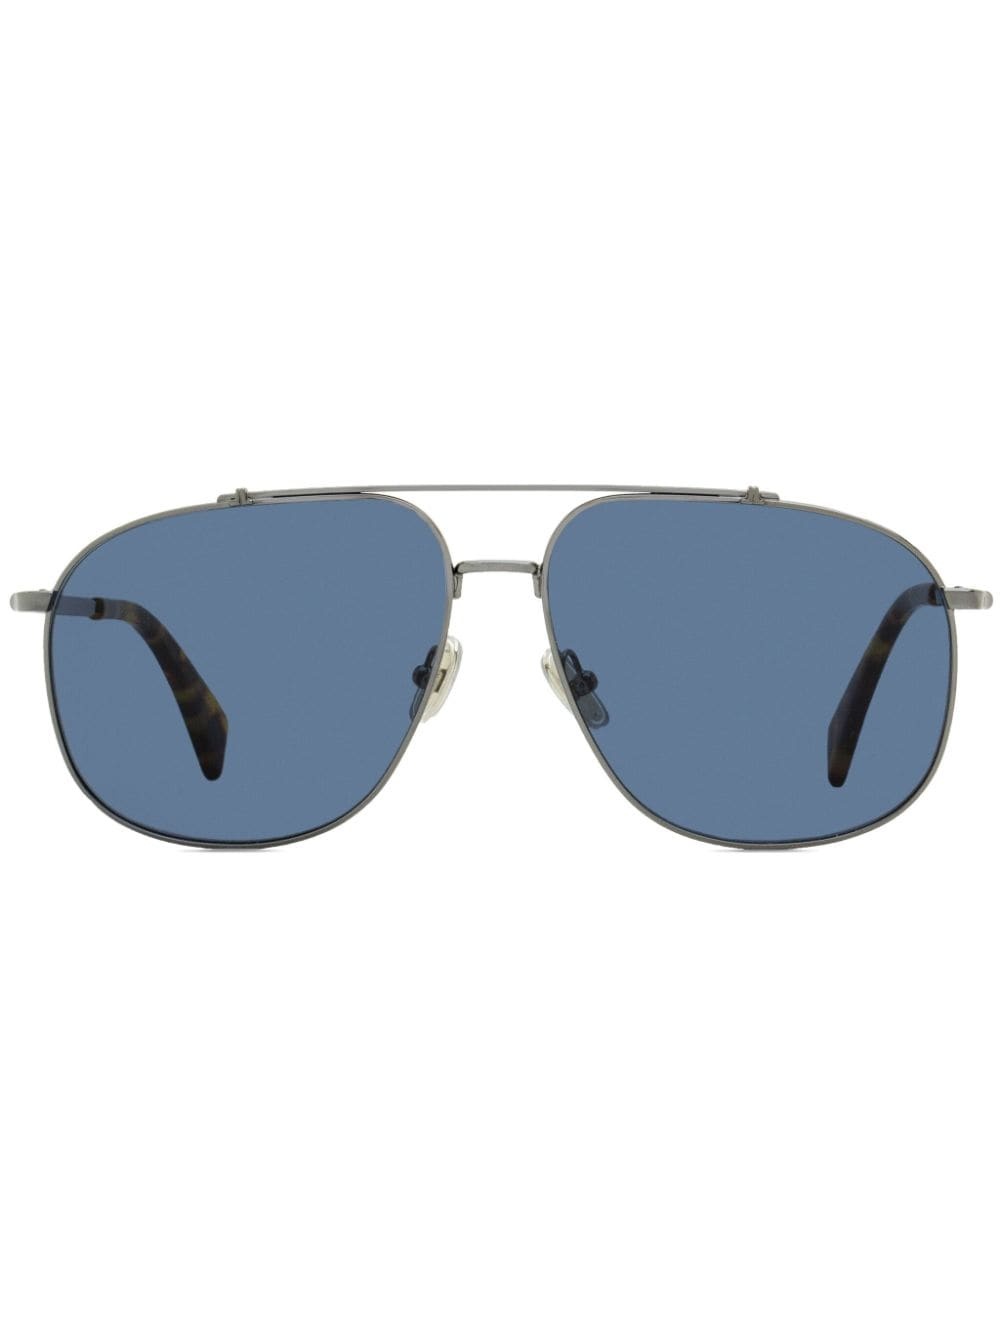 navigator-frame sunglasses - 1